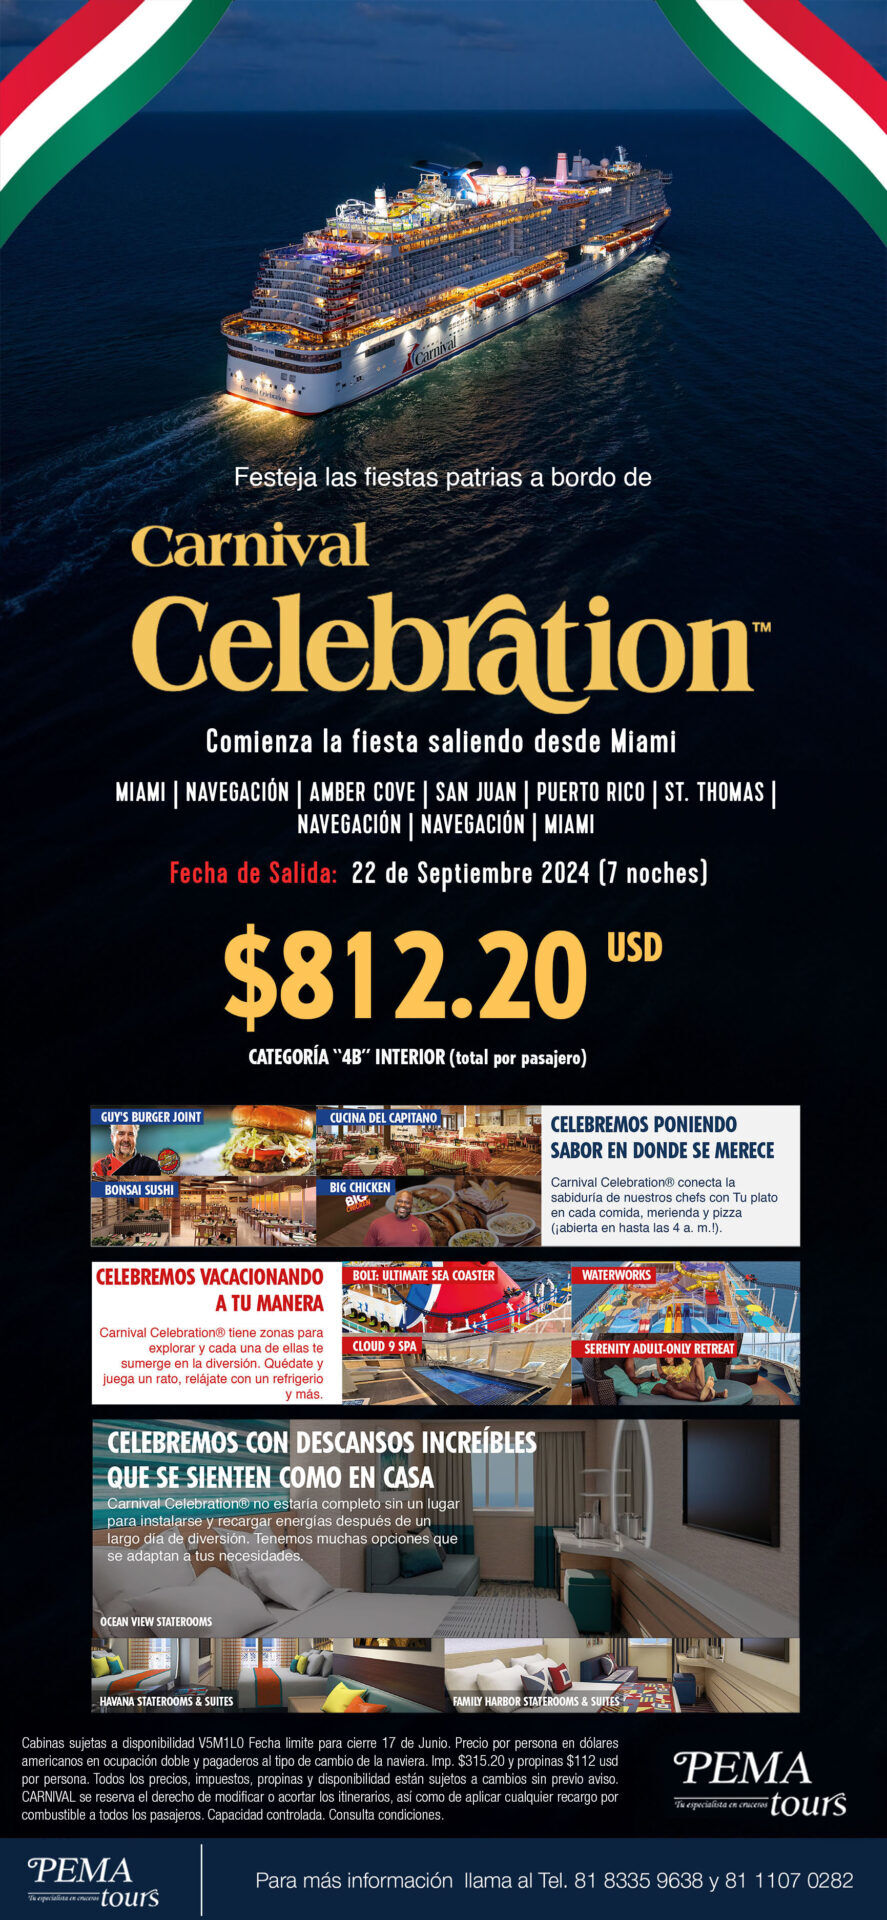 Carnival Celebration salida para festejar fiestas patrias con la naviera Carnival Cruises